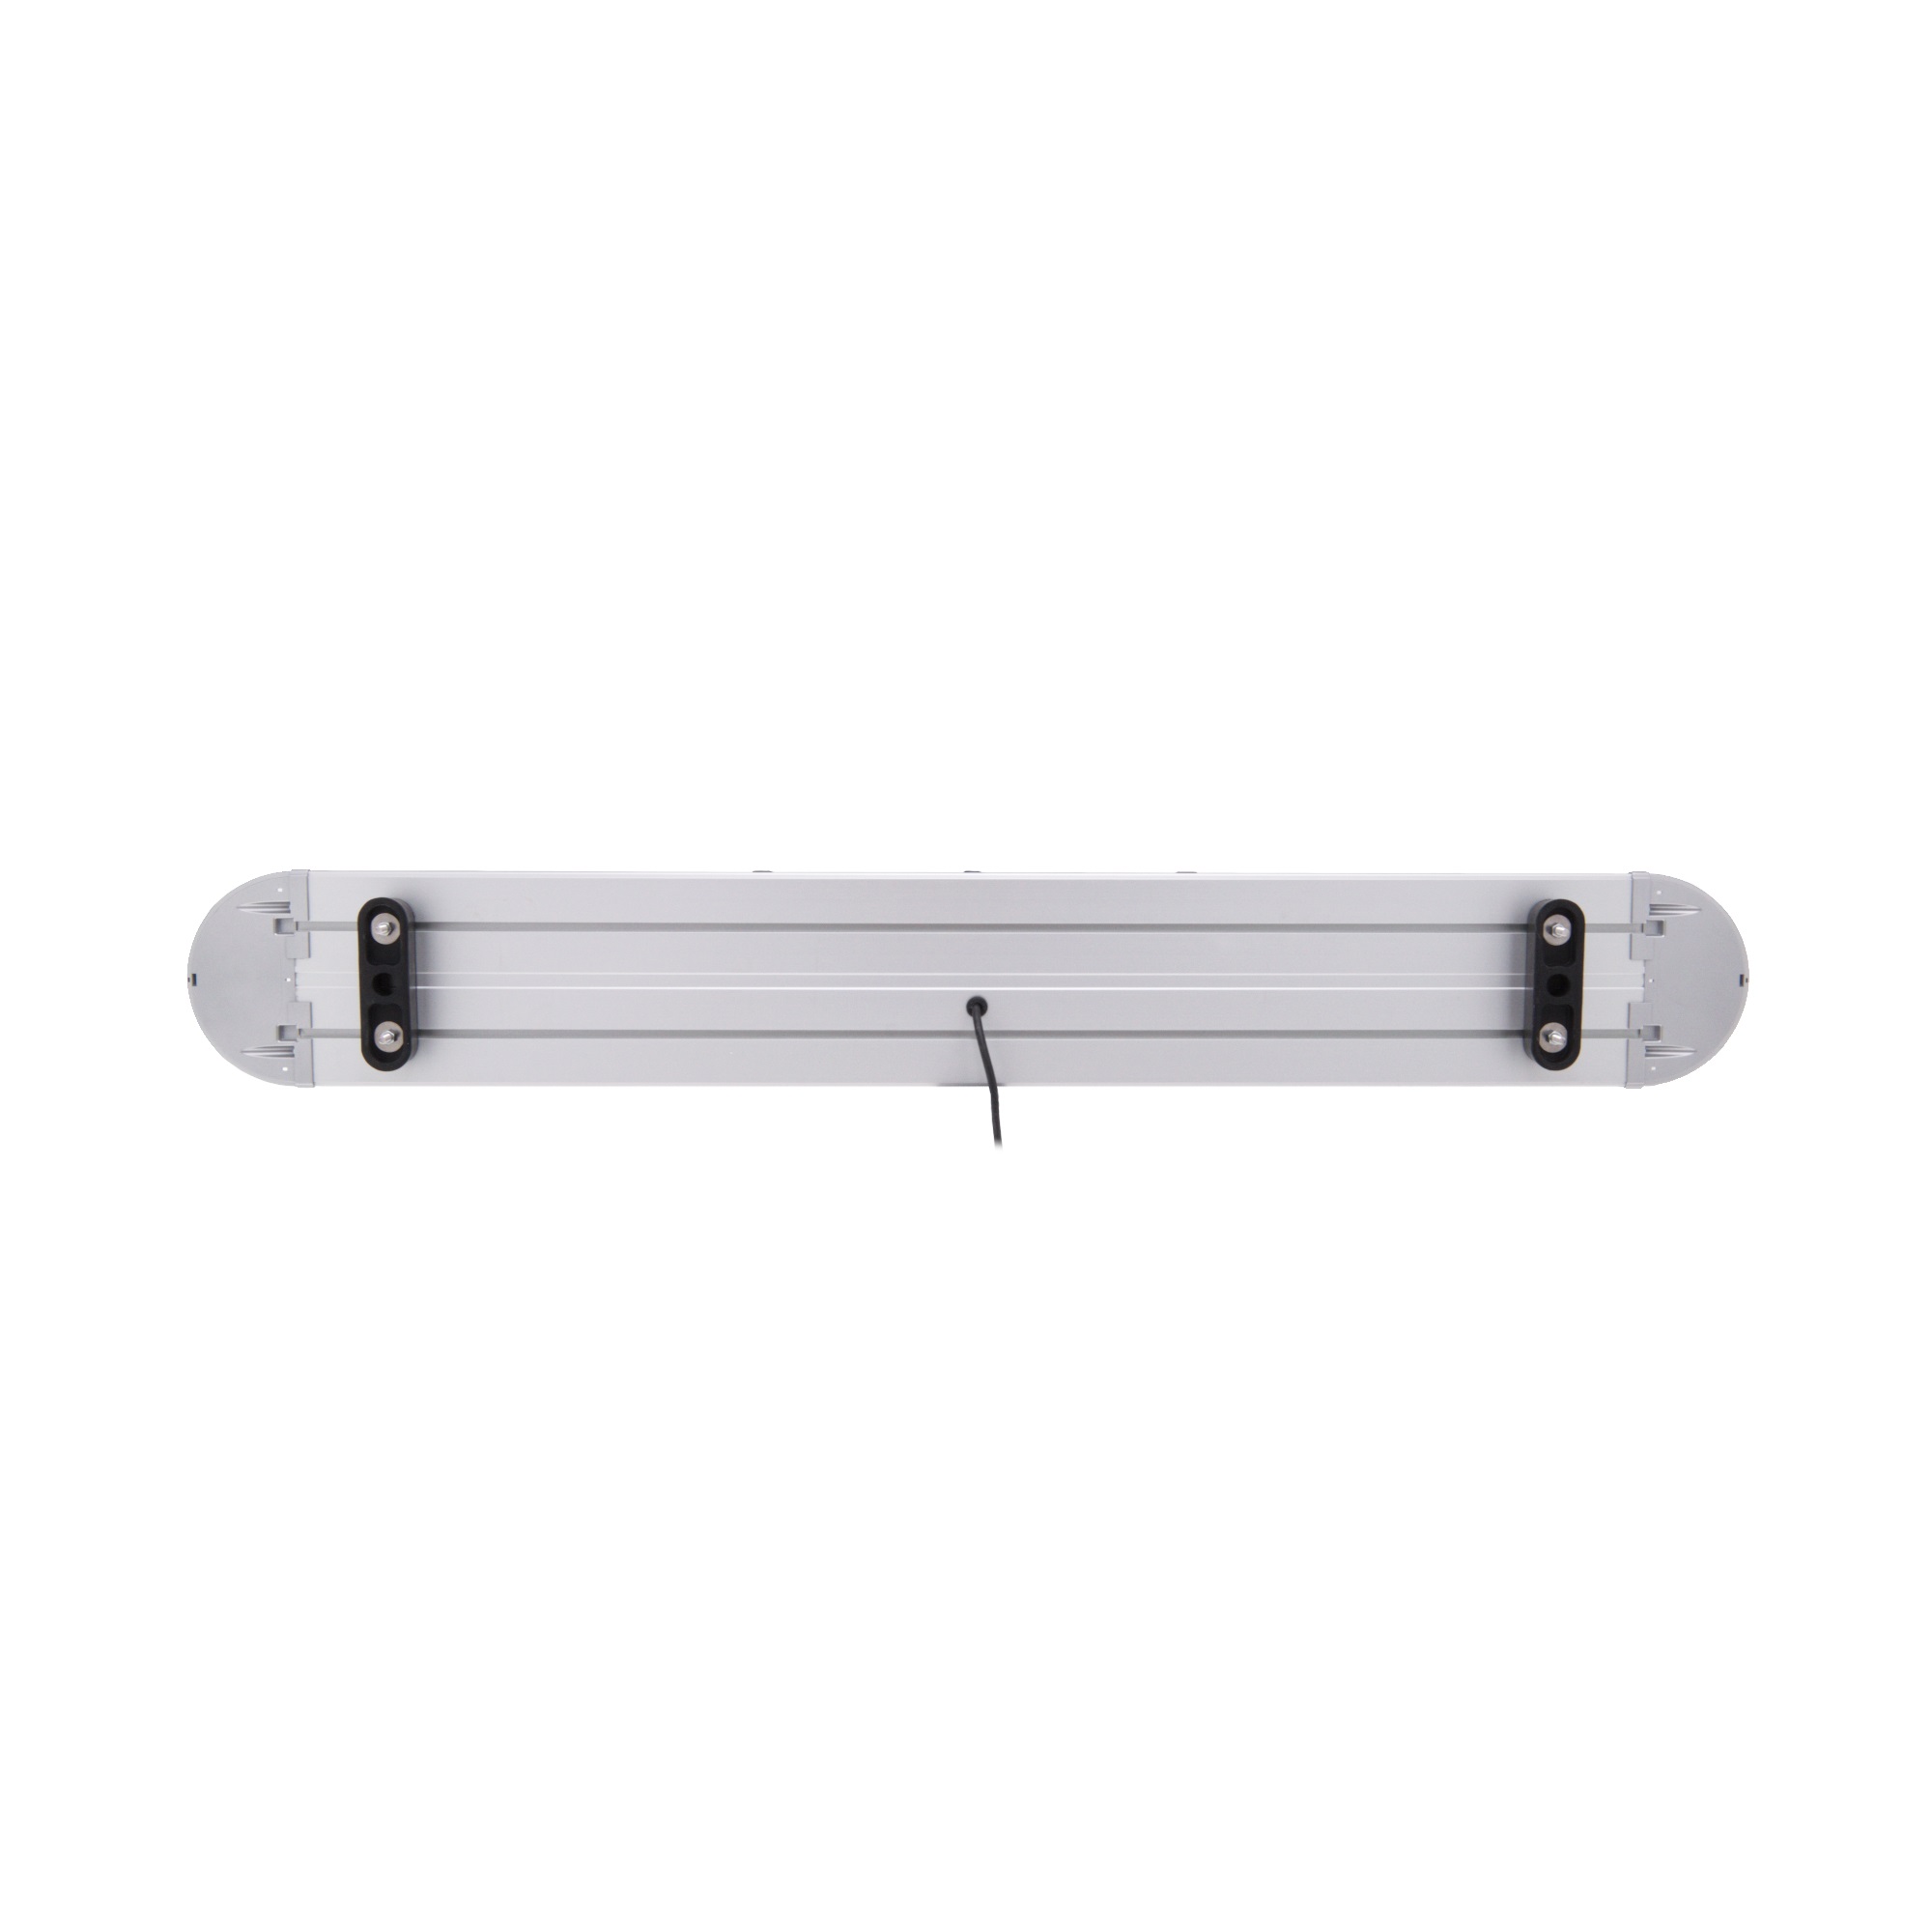 HURRICANE LED-Warnbalken kaufen, Online Shop, 911Services GmbH